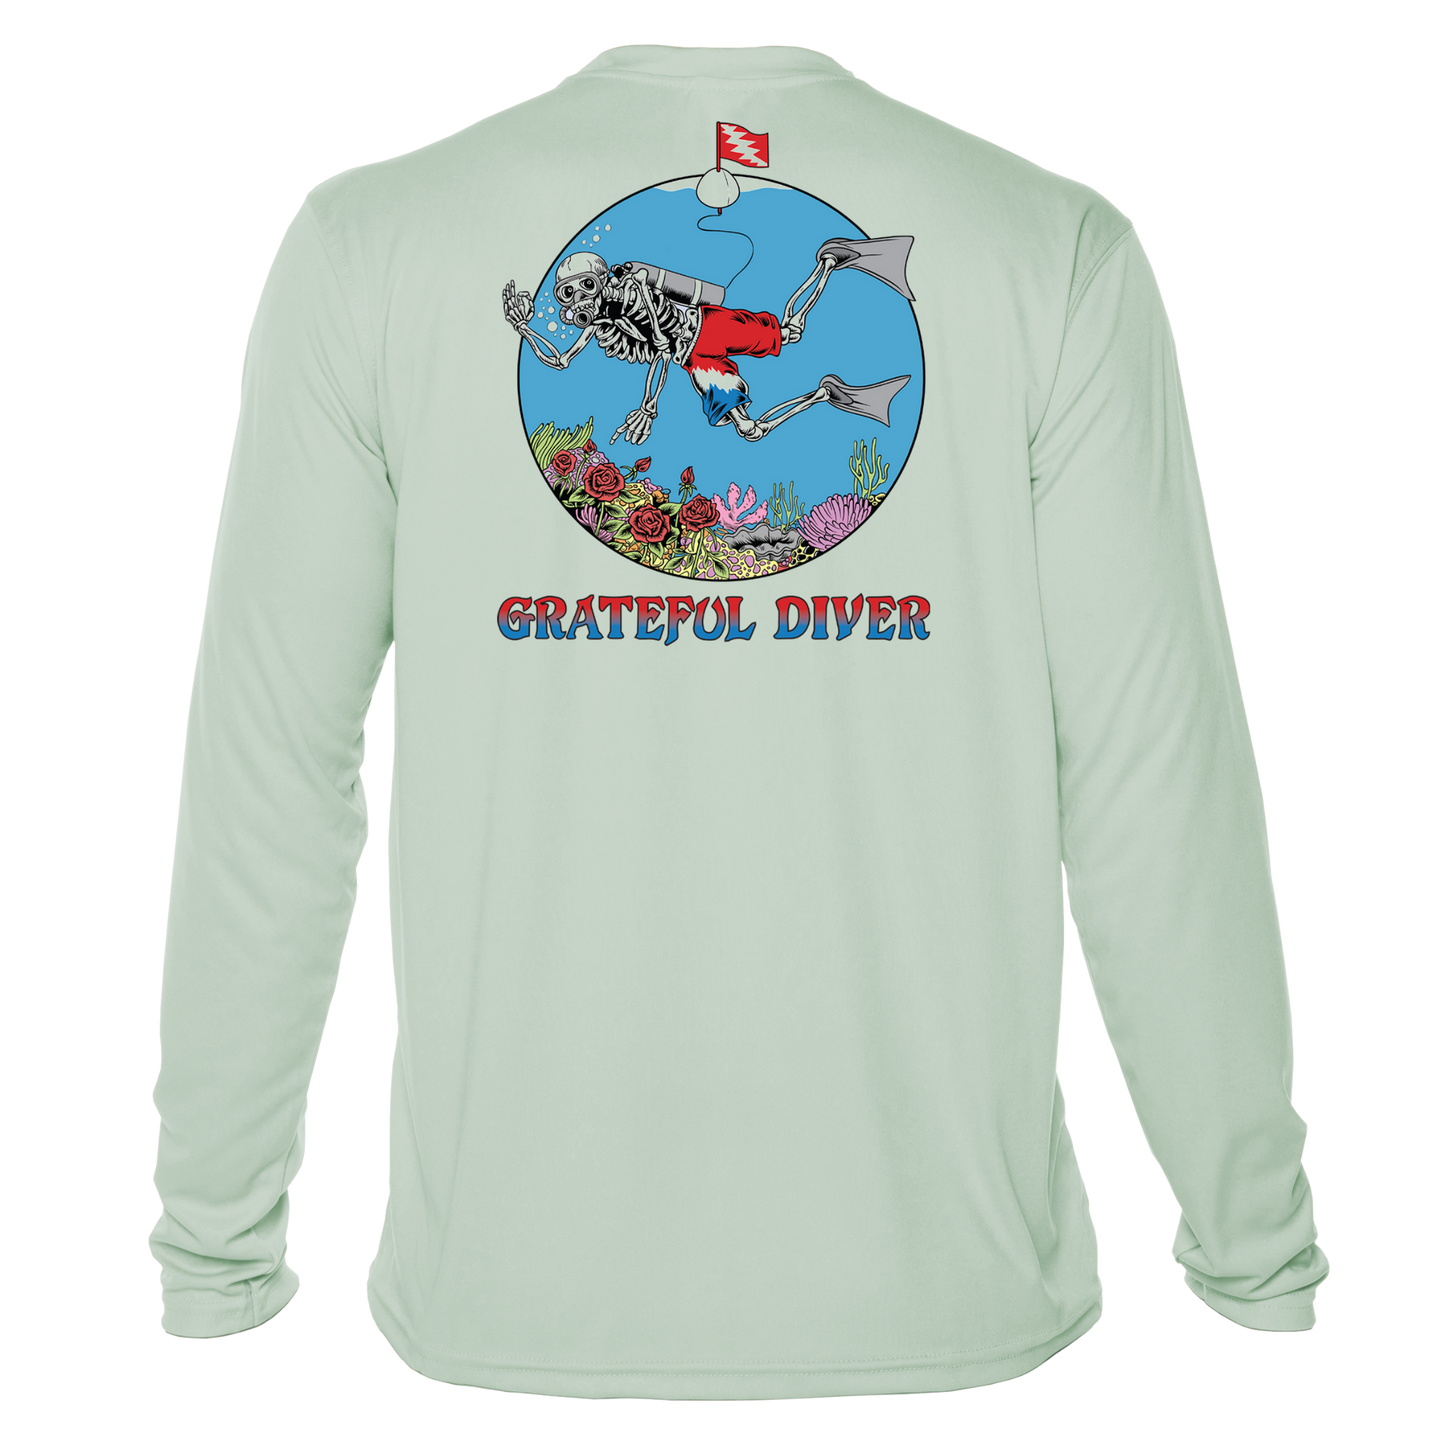 Grateful Diver Skeleton Diver UV Shirt in seagrass showing the back off figure